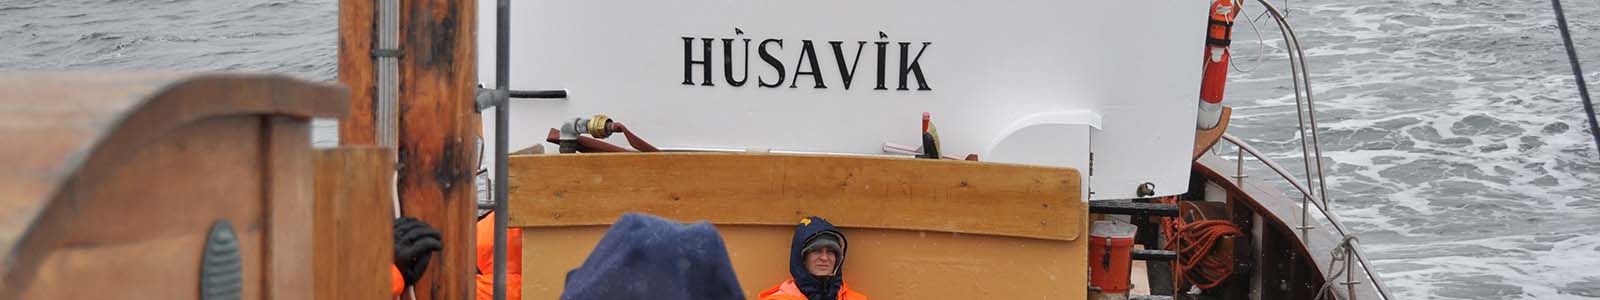 Bezienswaardigheden Húsavík in IJsland